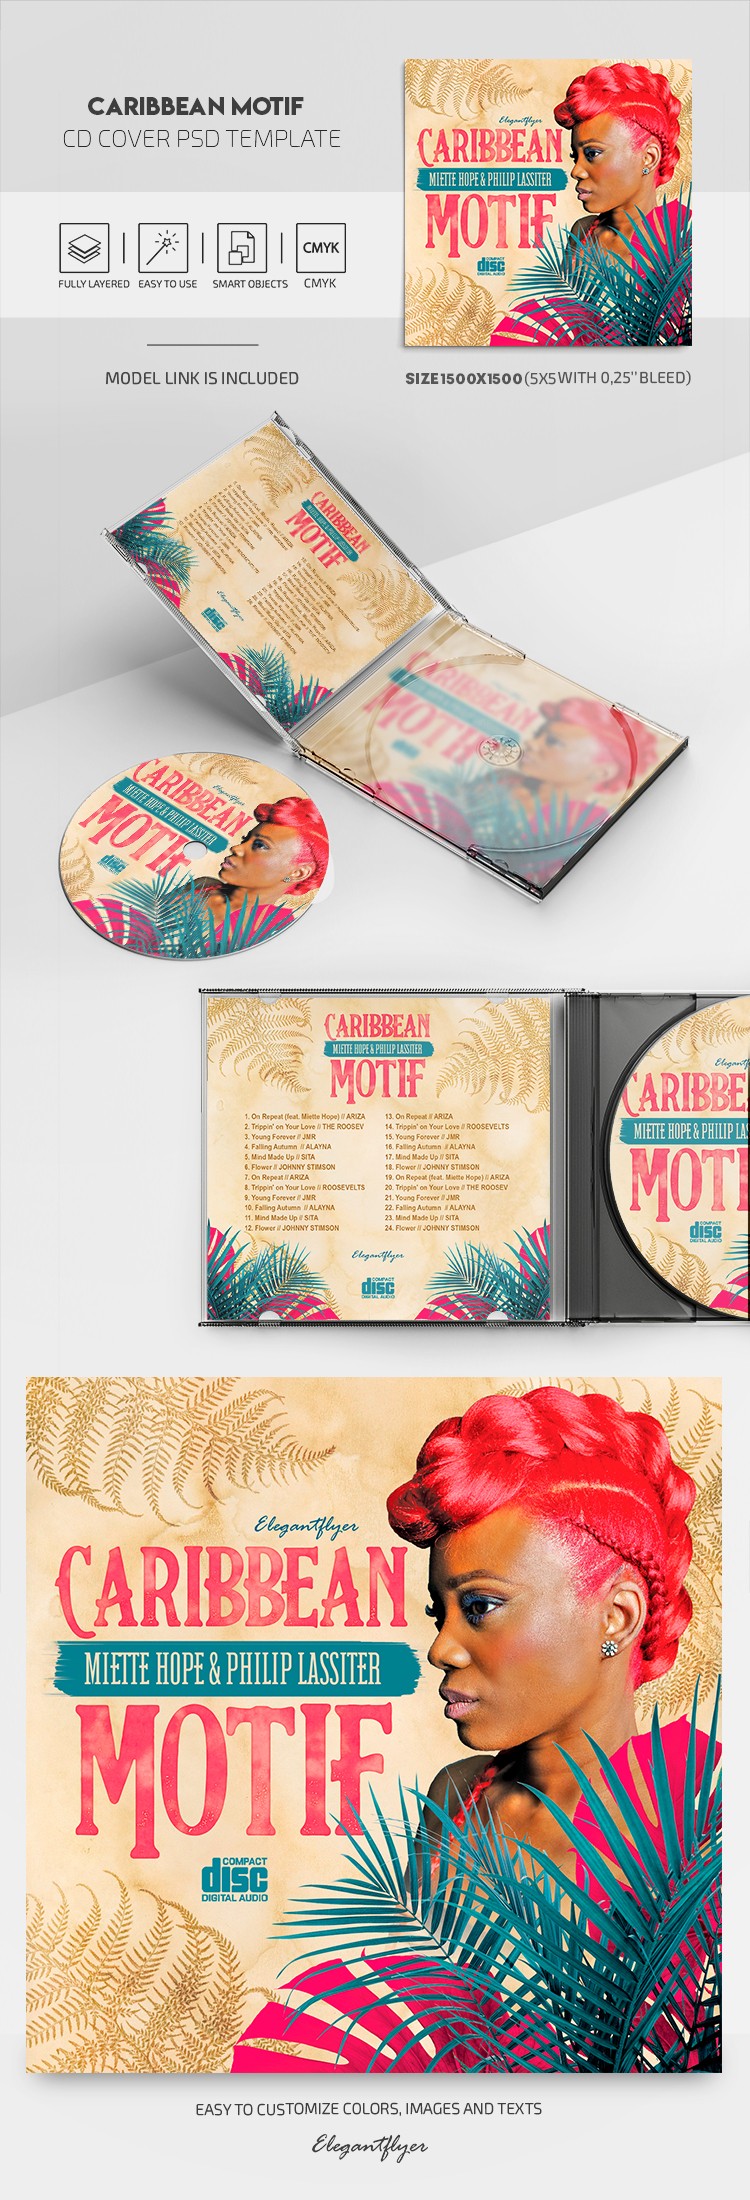 Portada de CD con motivos del Caribe by ElegantFlyer